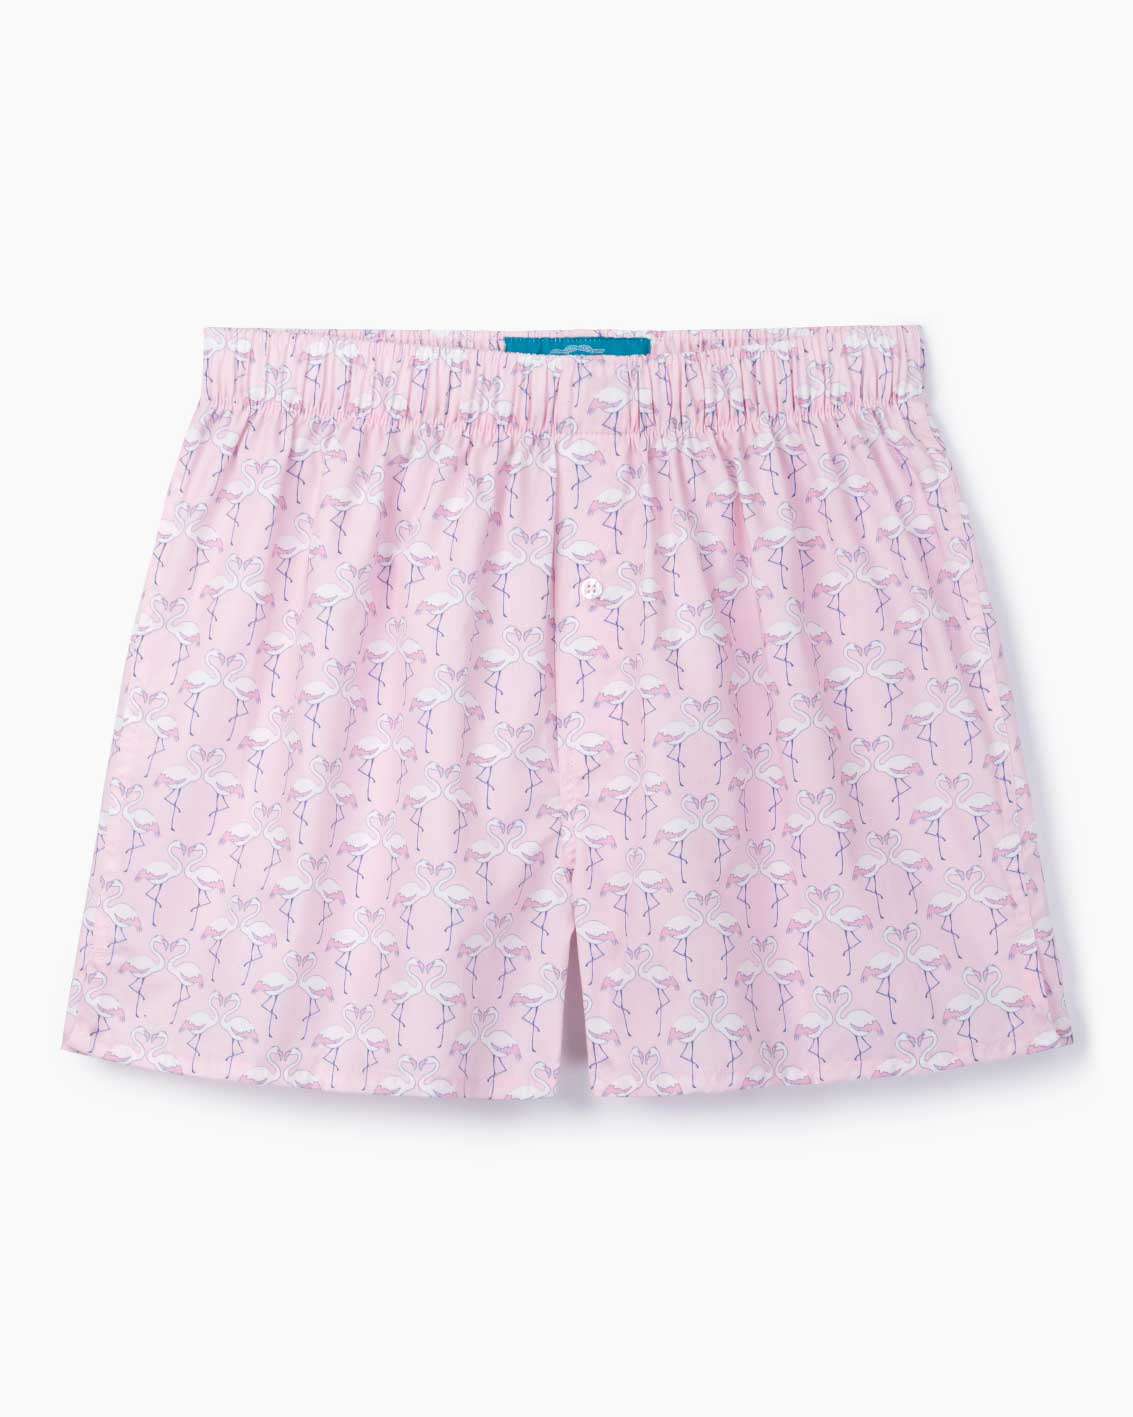 Boxer Shorts – ReefKnots